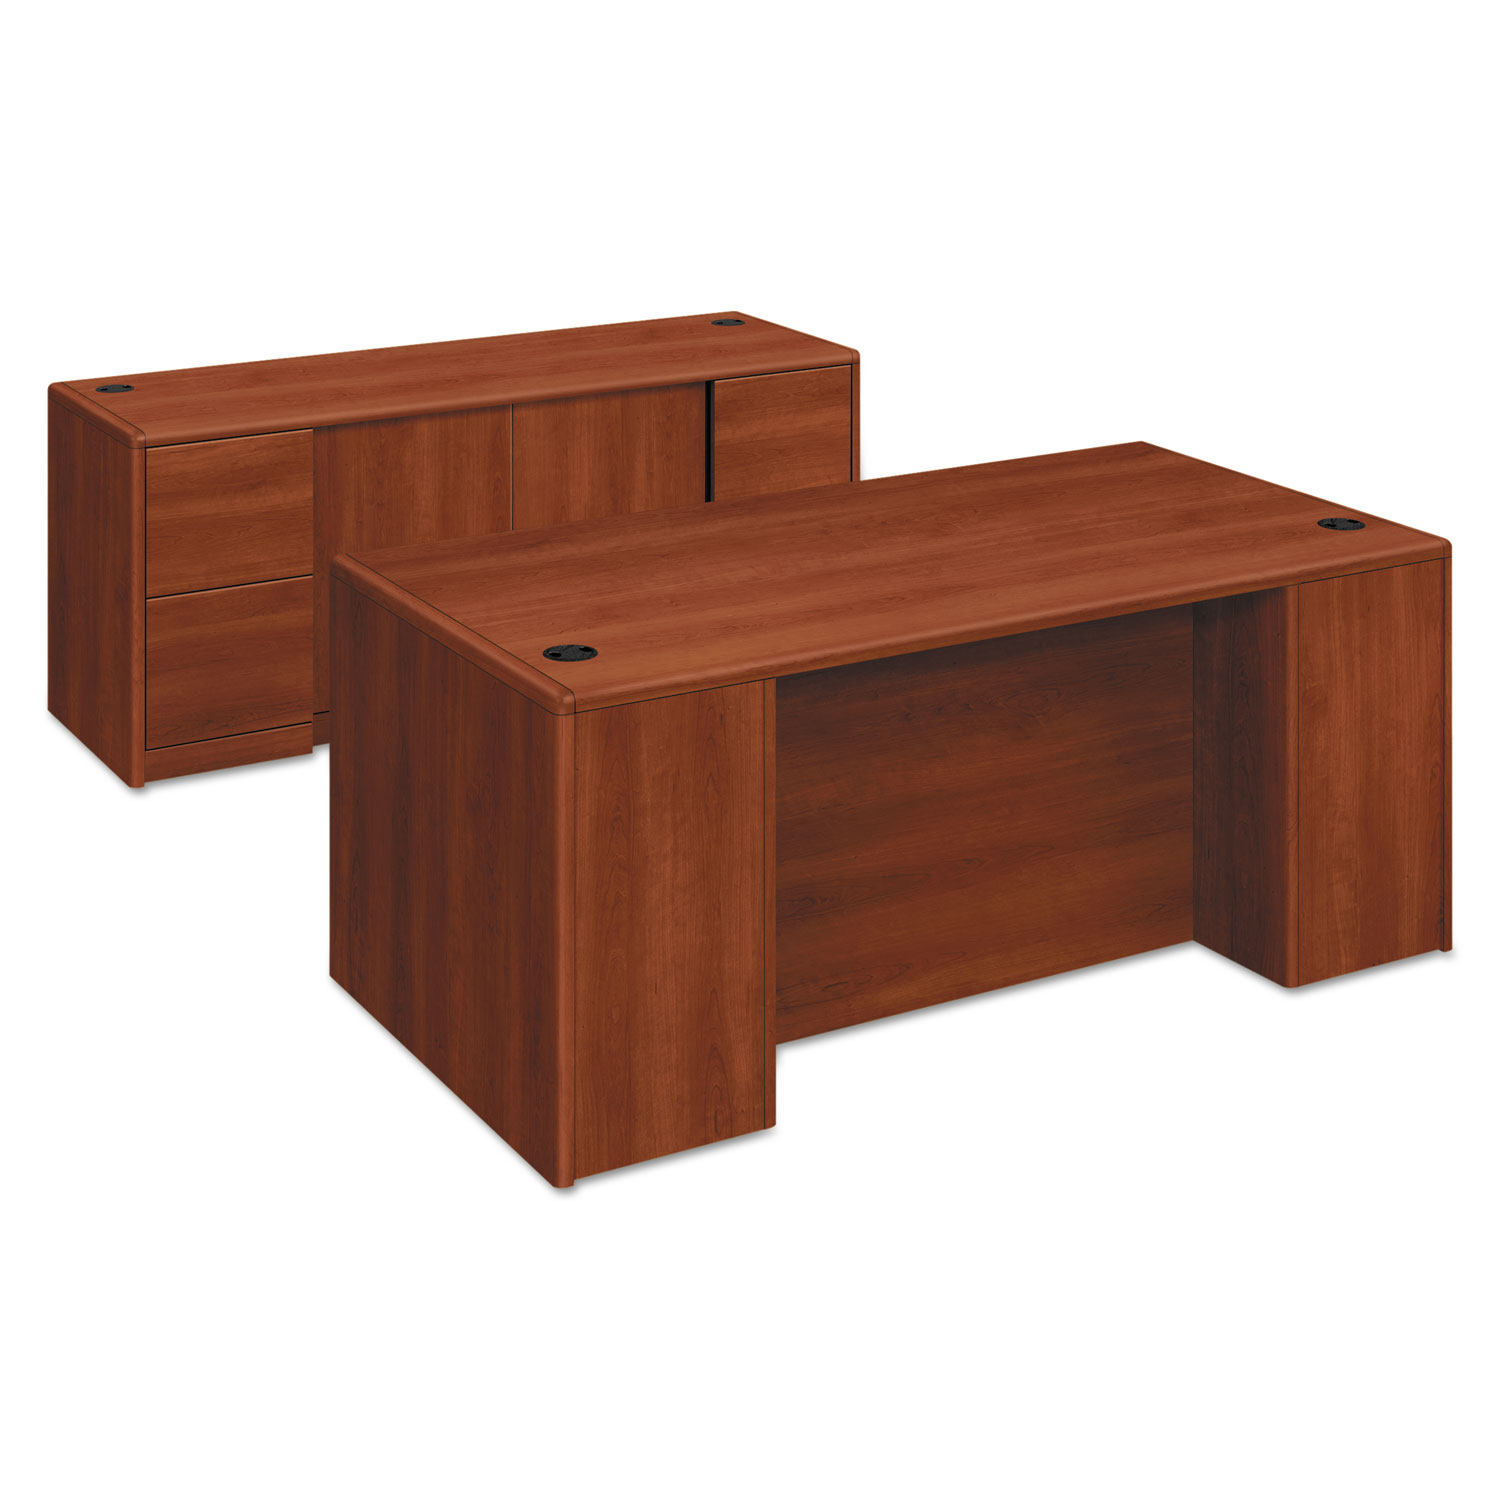  HON H10799.COGNCOGN 10700 Double Pedestal Desk with Full Pedestals, 72w x 36d x 29.5h, Cognac (HON10799CO) 